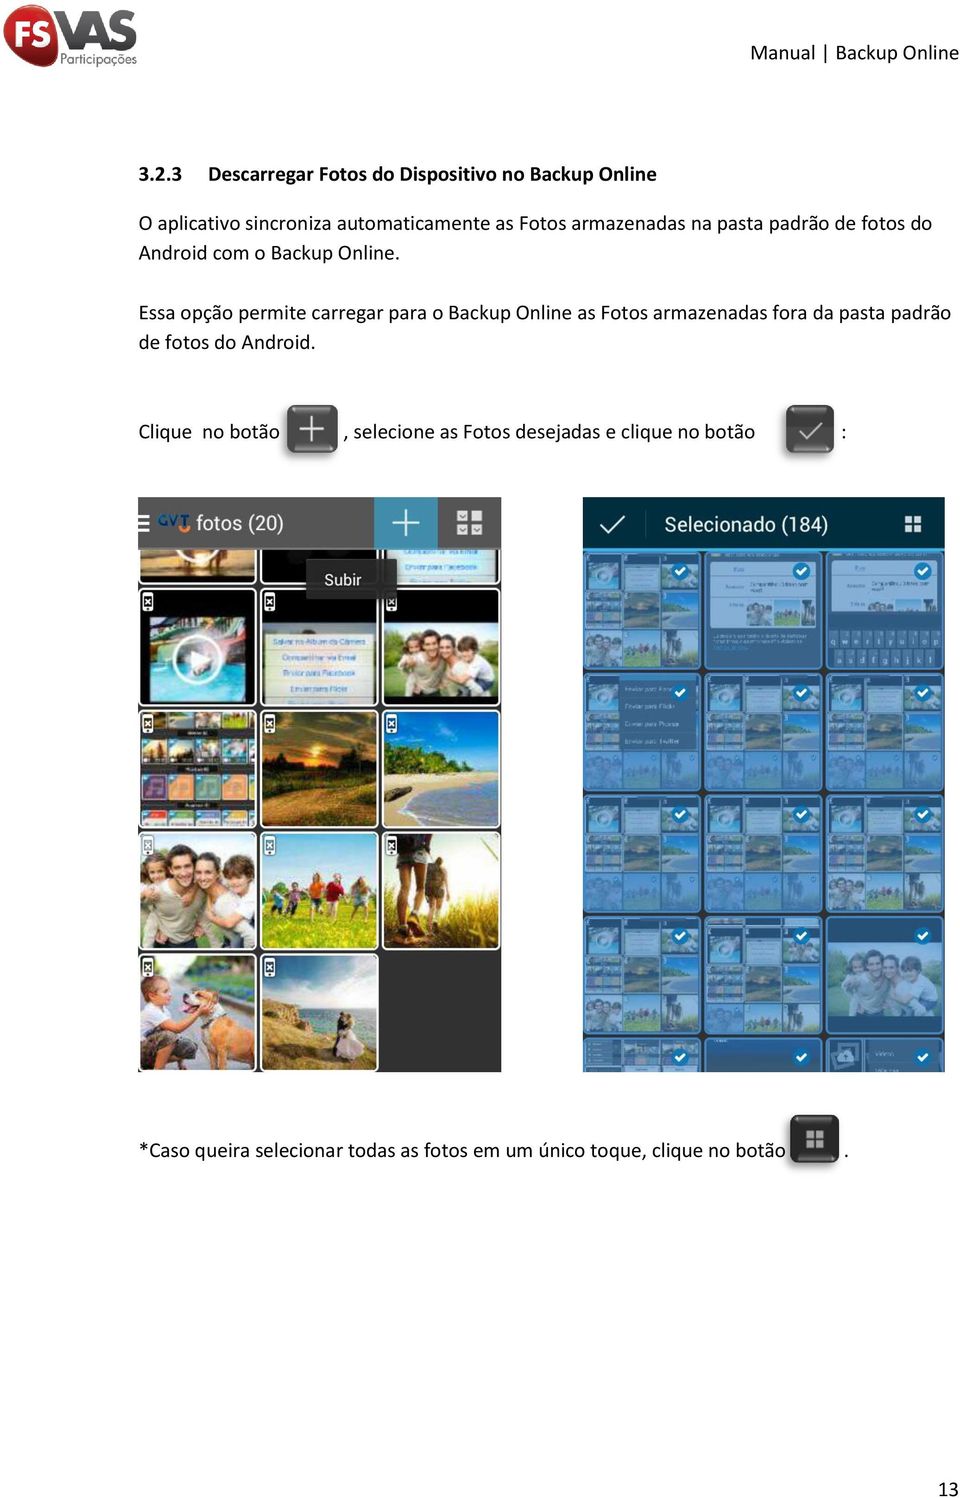 Essa opção permite carregar para o Backup Online as Fotos armazenadas fora da pasta padrão de fotos do